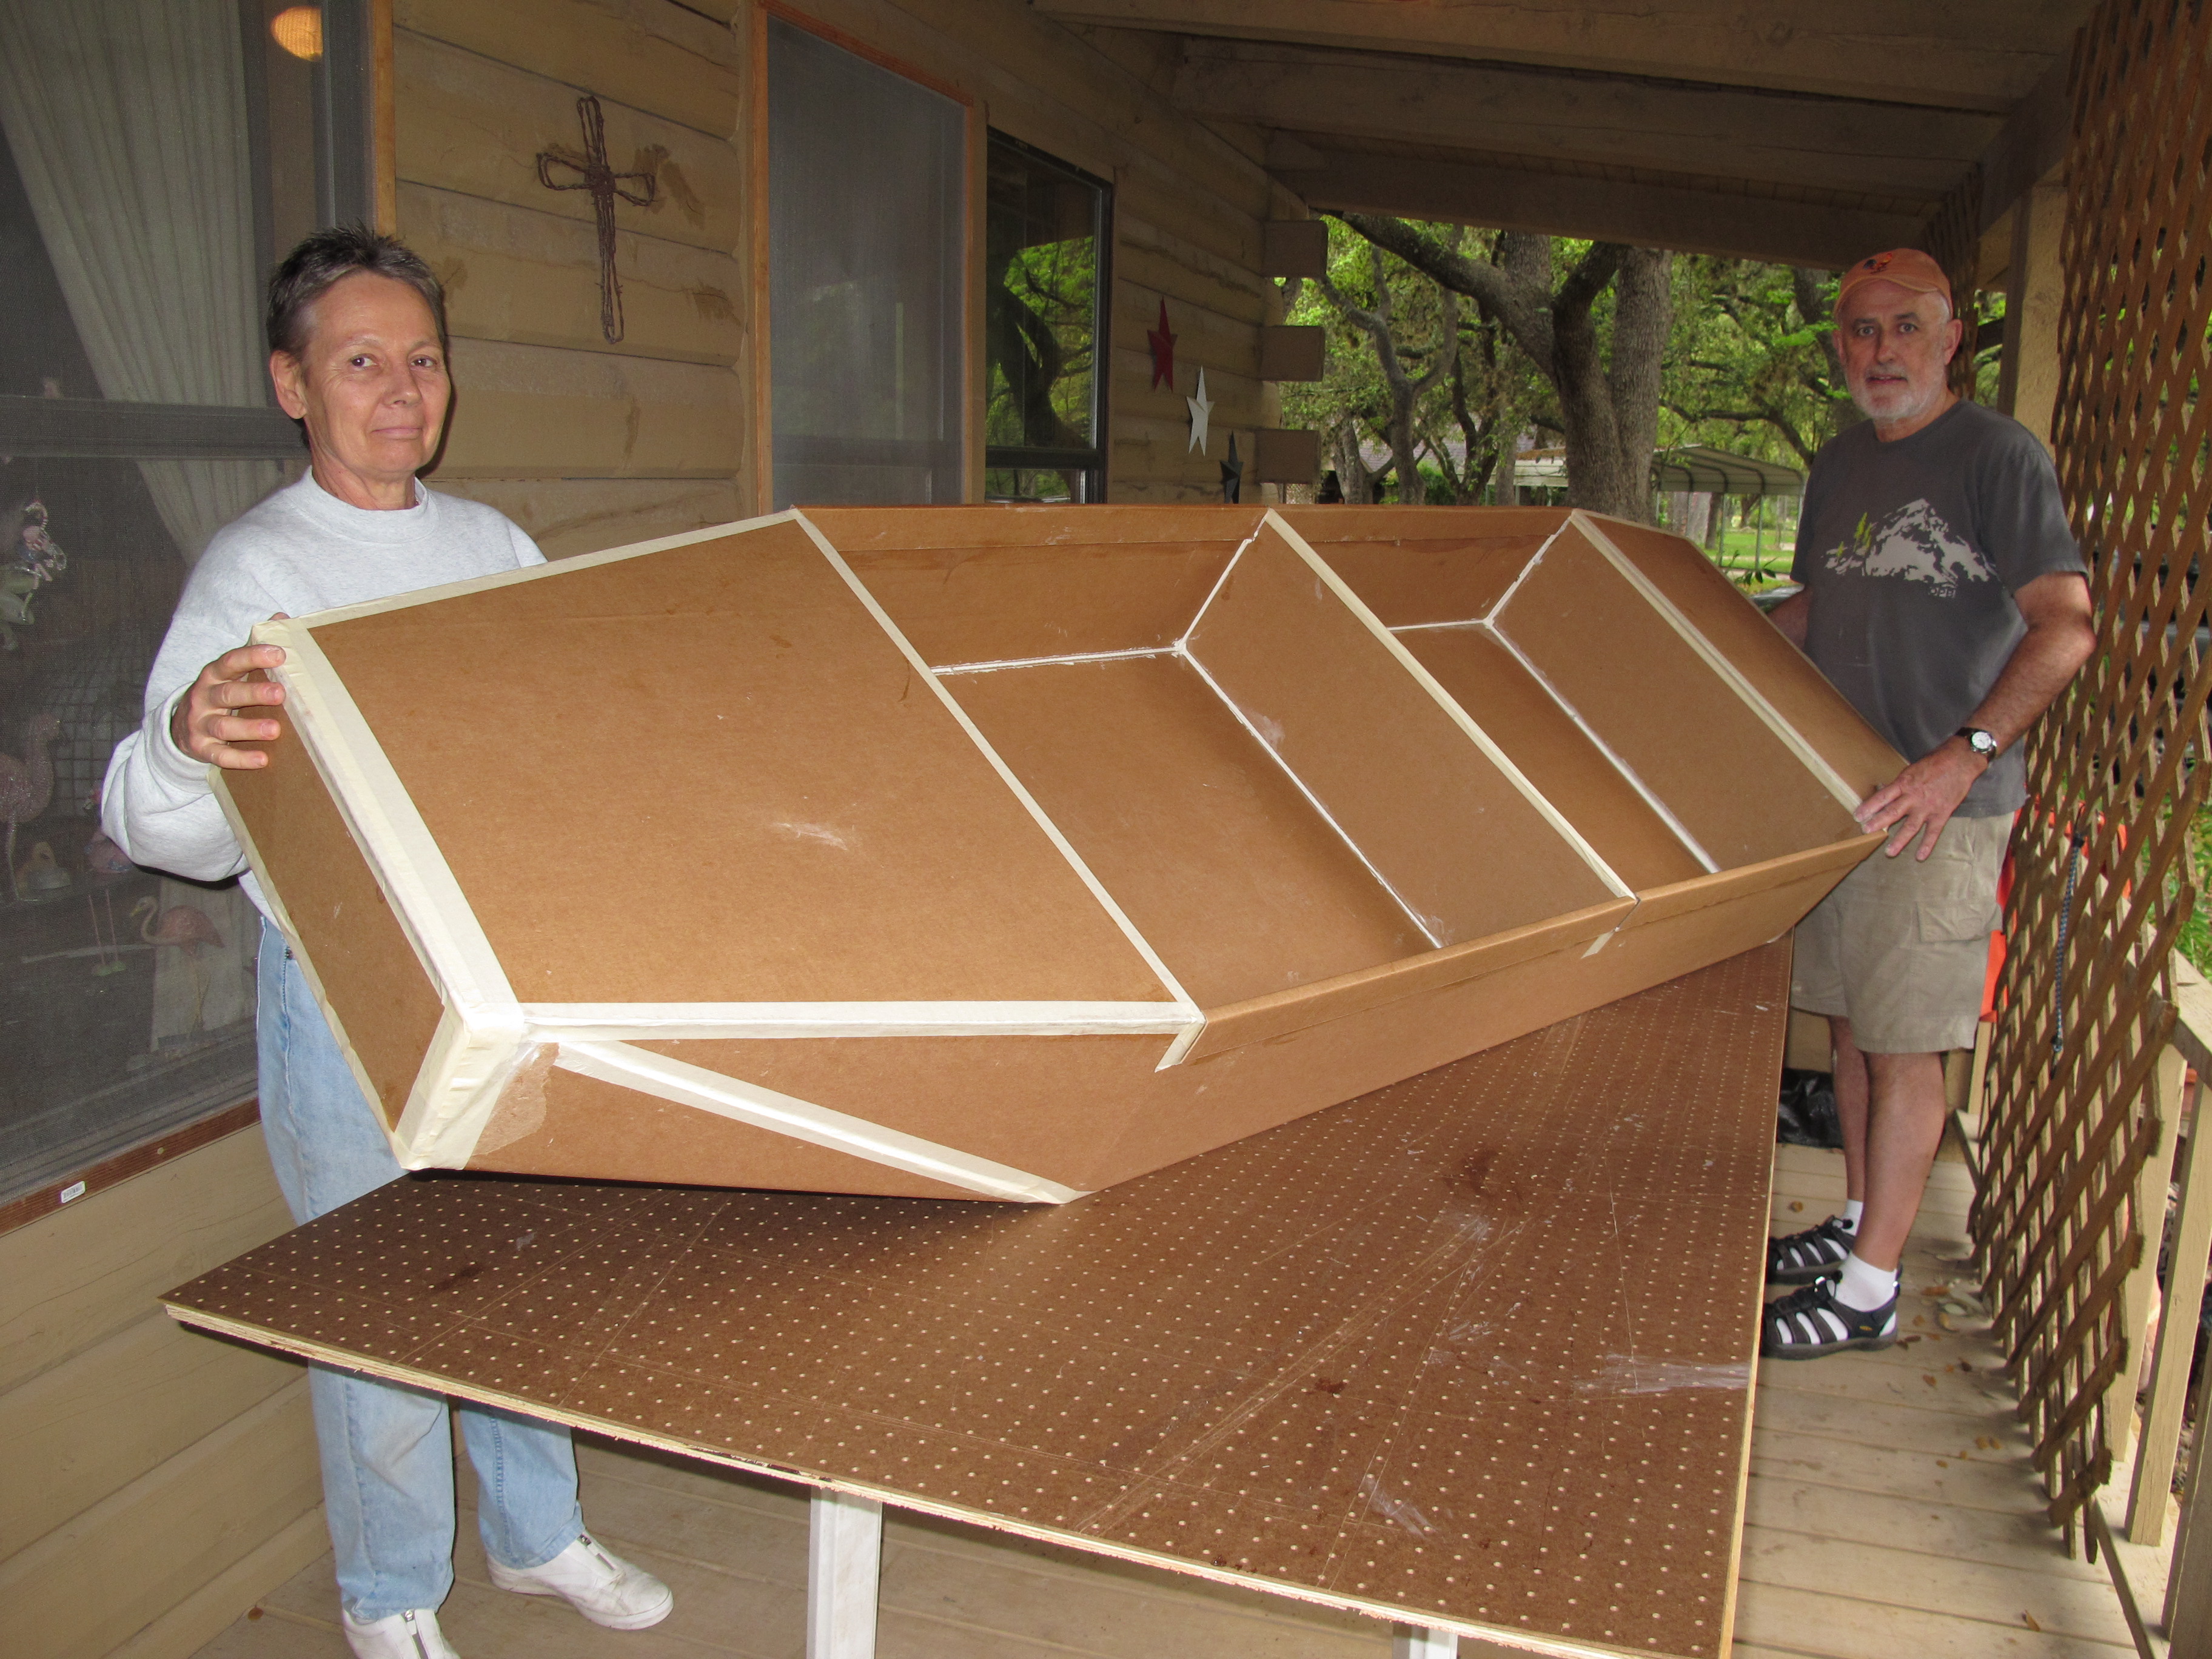 Cardboard Canoe Design